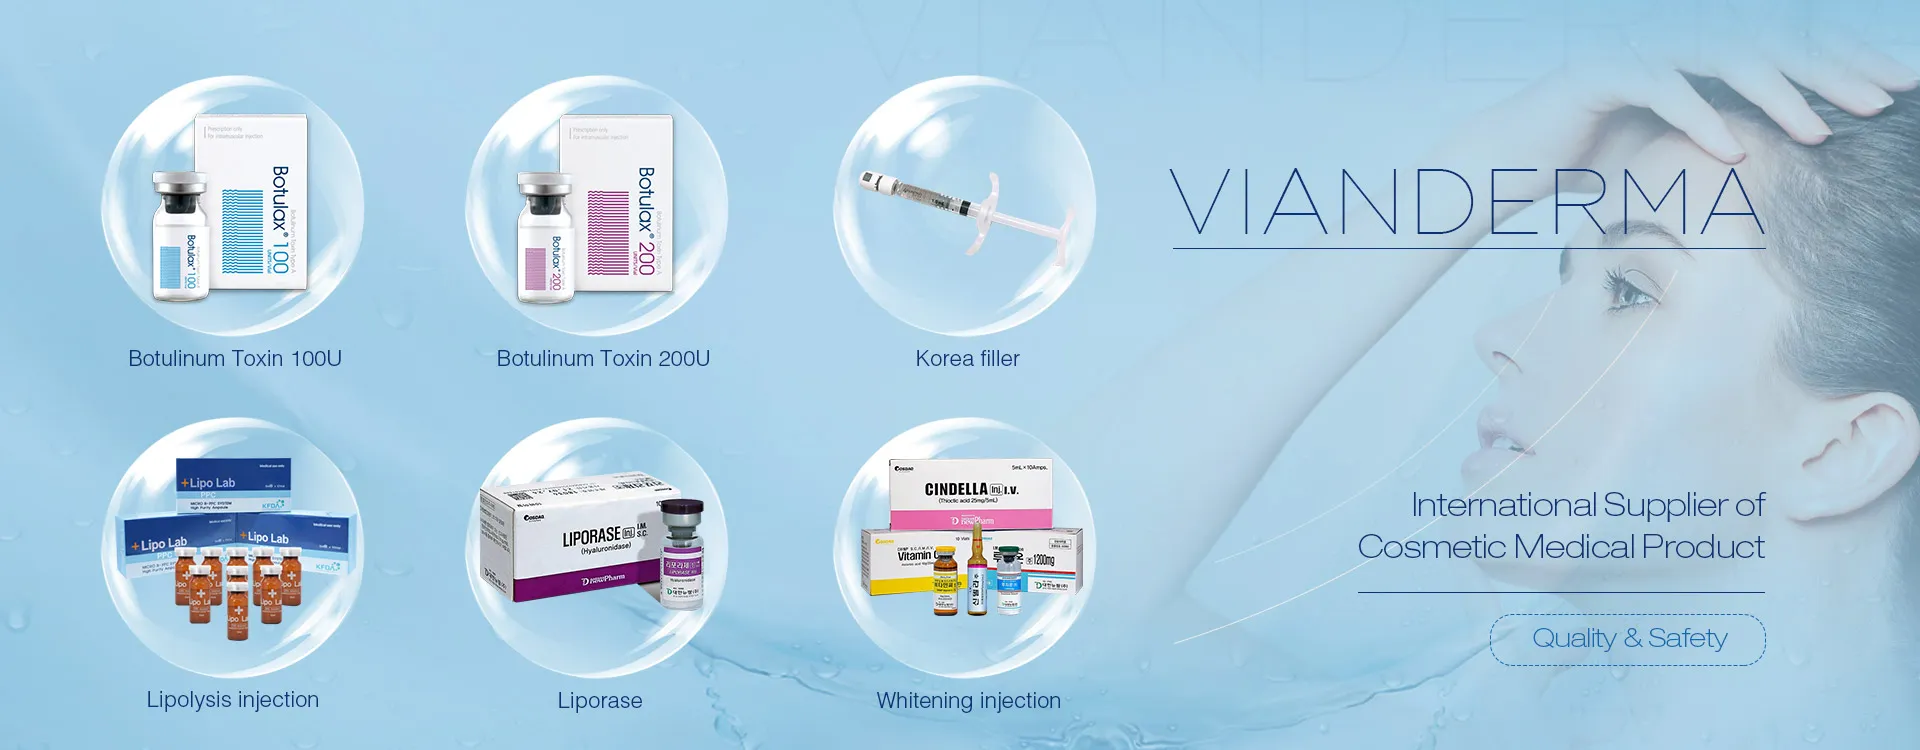 VIANDERMA - Proveedor internacional de productos médicos cosméticos